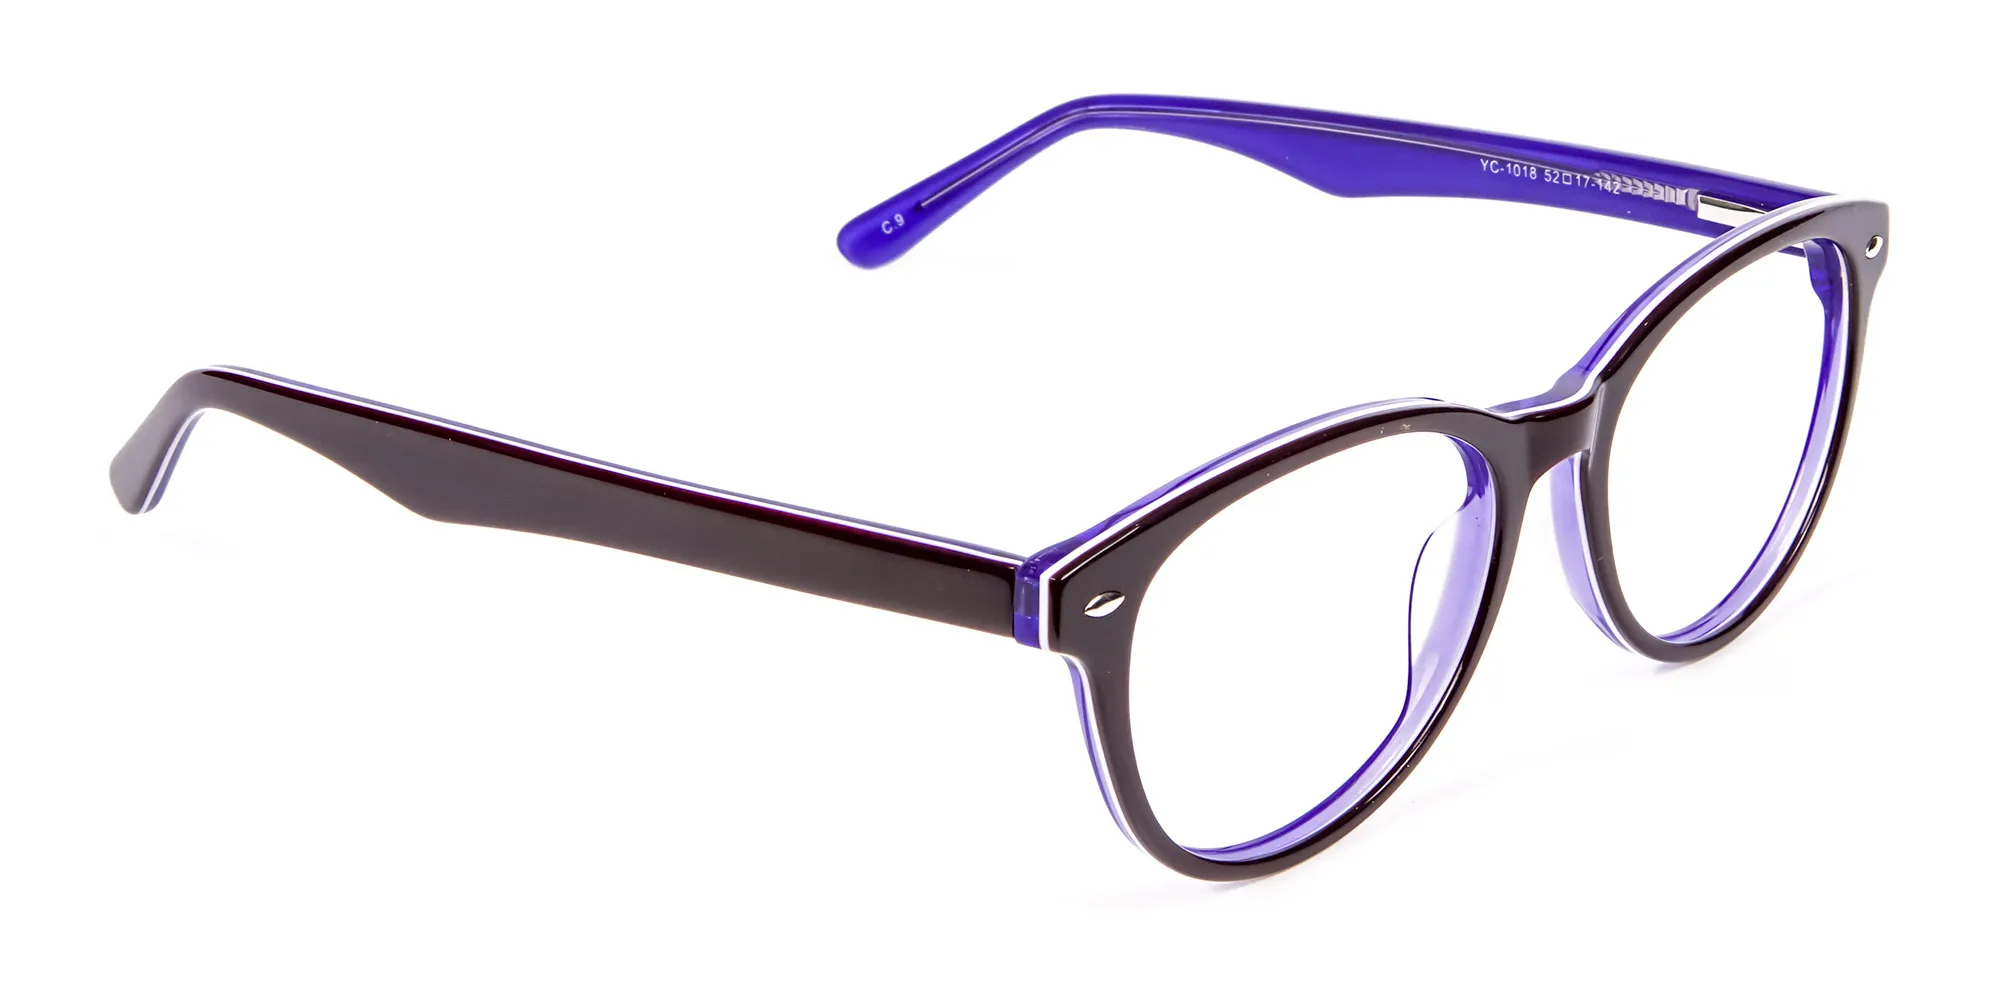 Black & Violet Eyeglasses Frame - 1